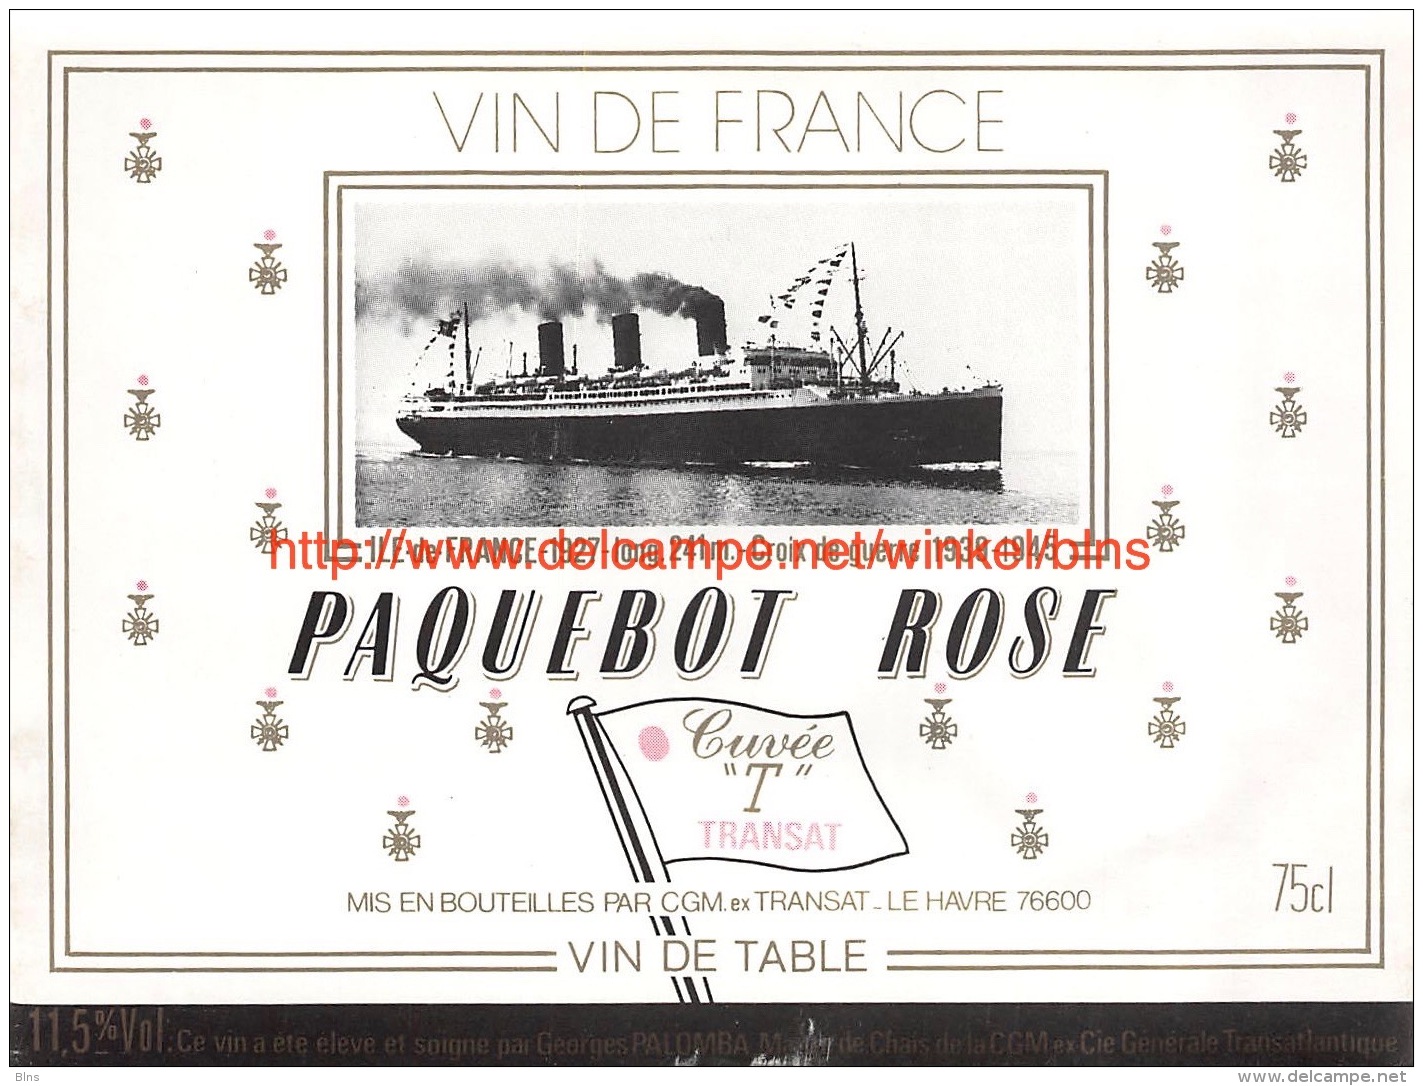 Paquebot Rosé - Ile-de-France 1927 - Sailboats & Sailing Vessels